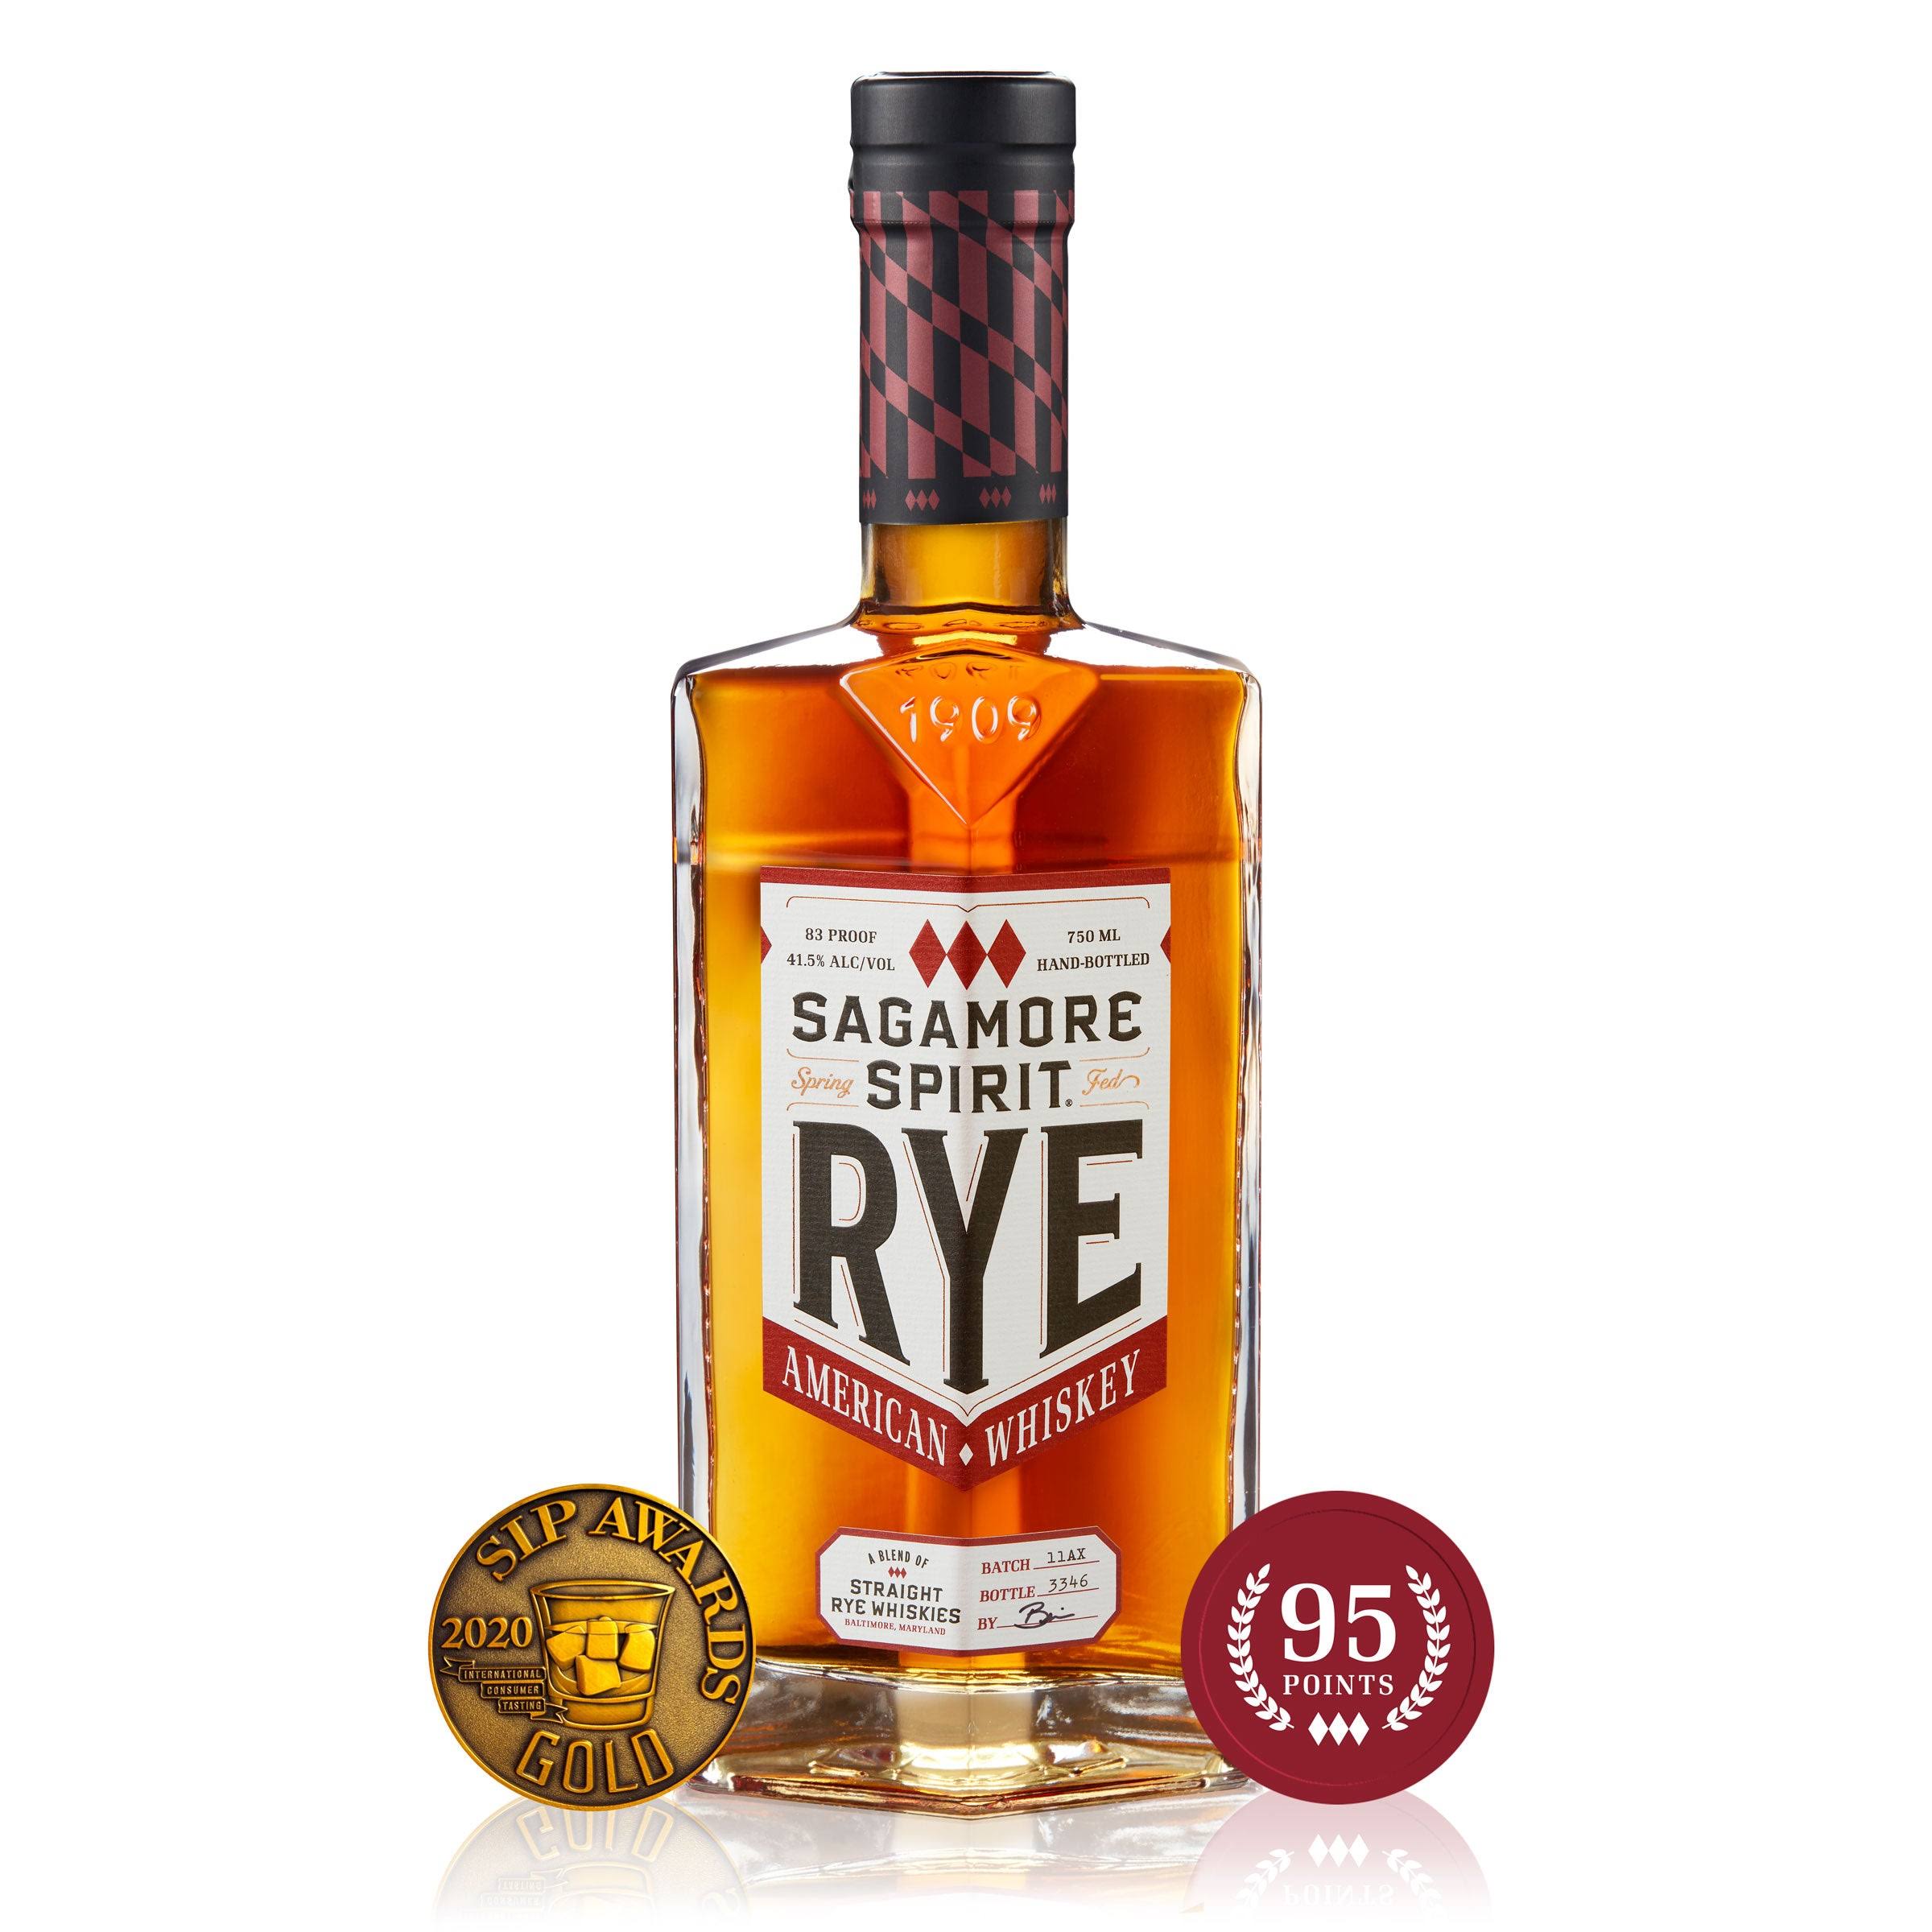 Sagamore Spirit Rye Whiskey (750 mL)